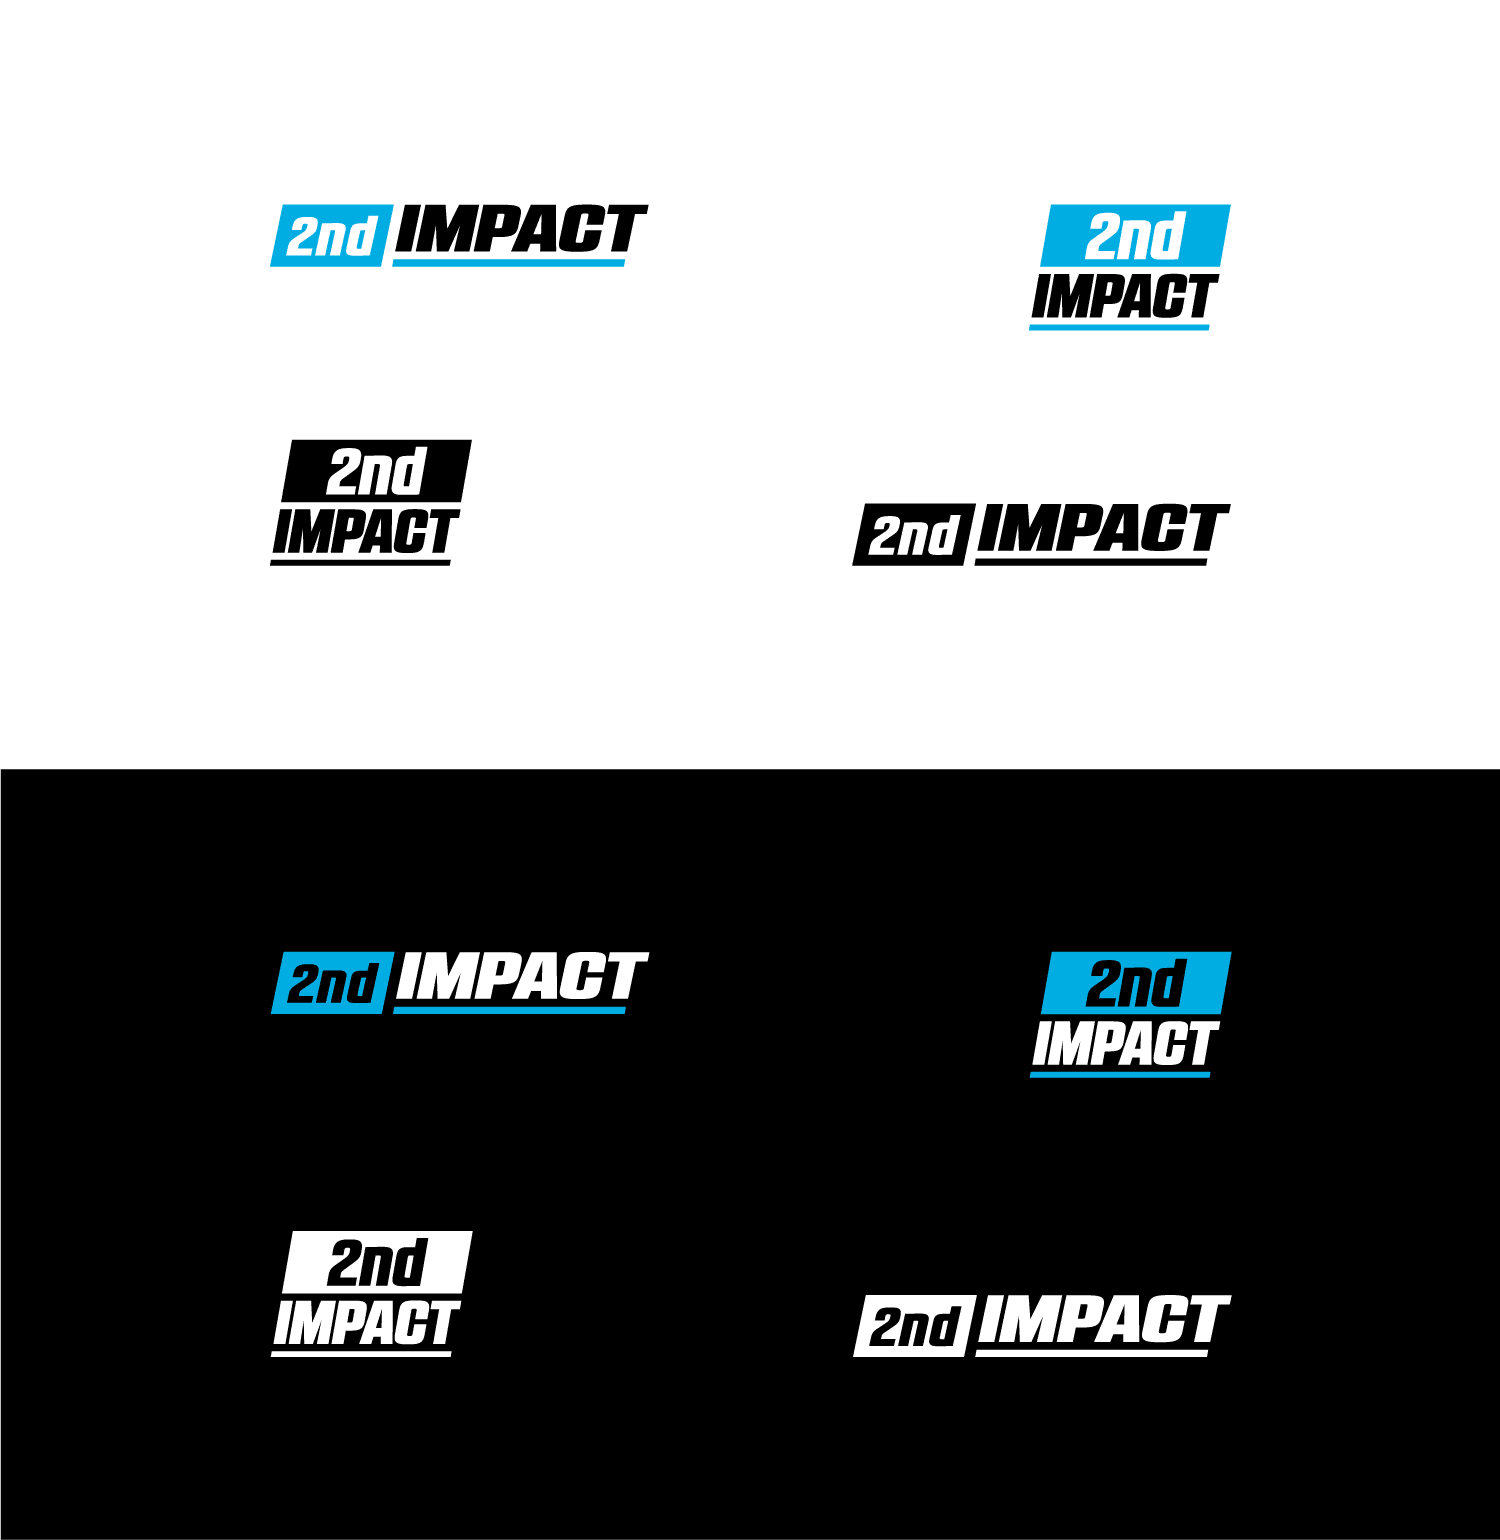 2nd Impact final logos